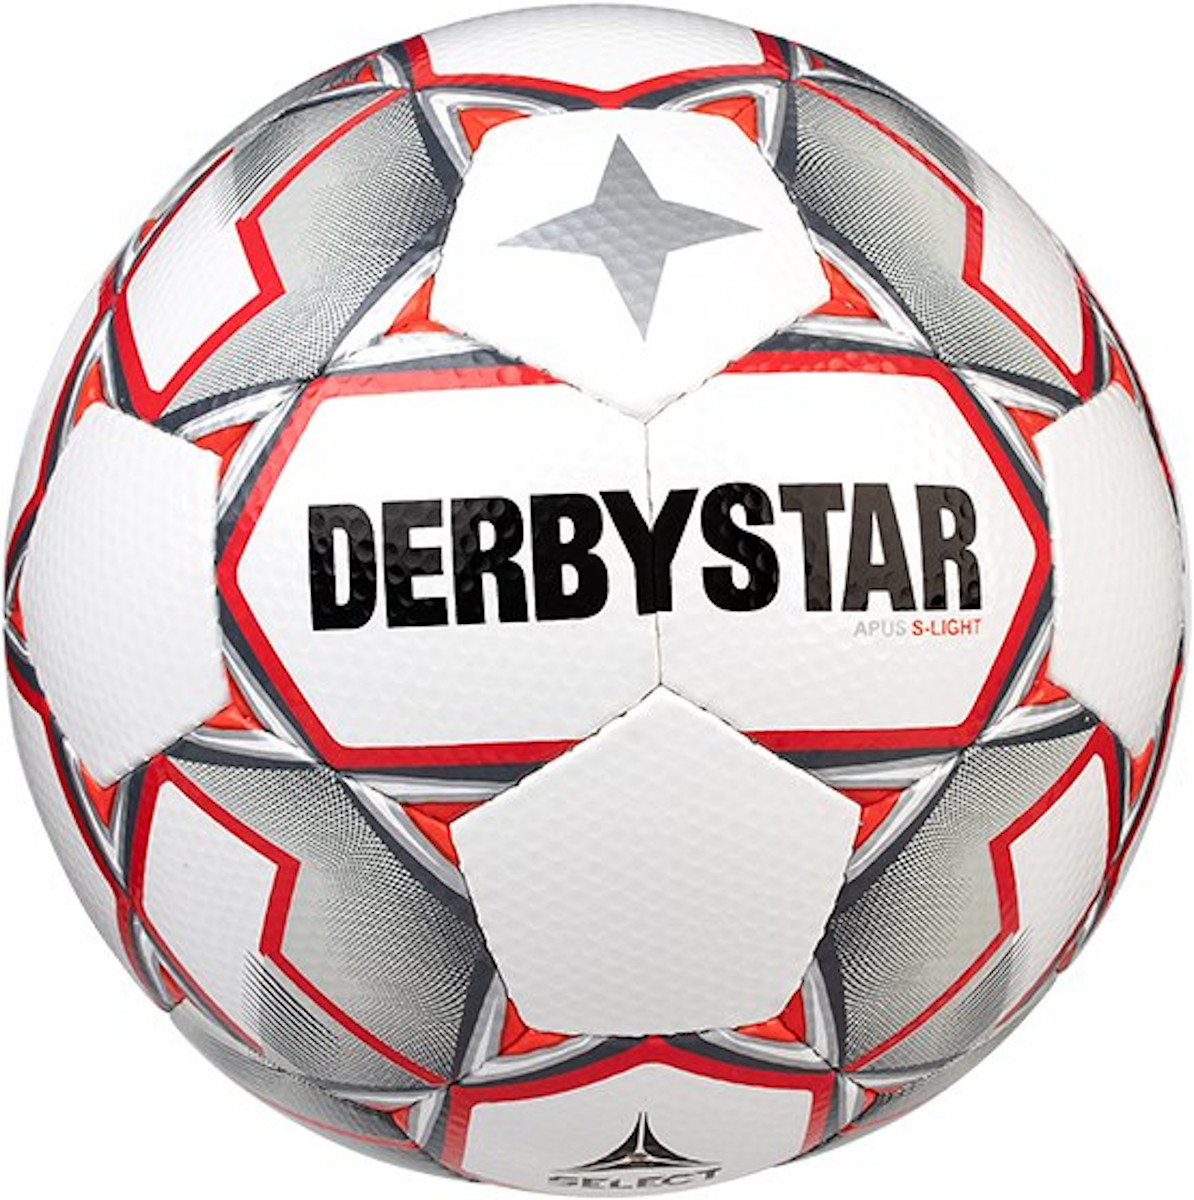 Balance ball Derbystar Apus S-Light v20 290 grams Lightball